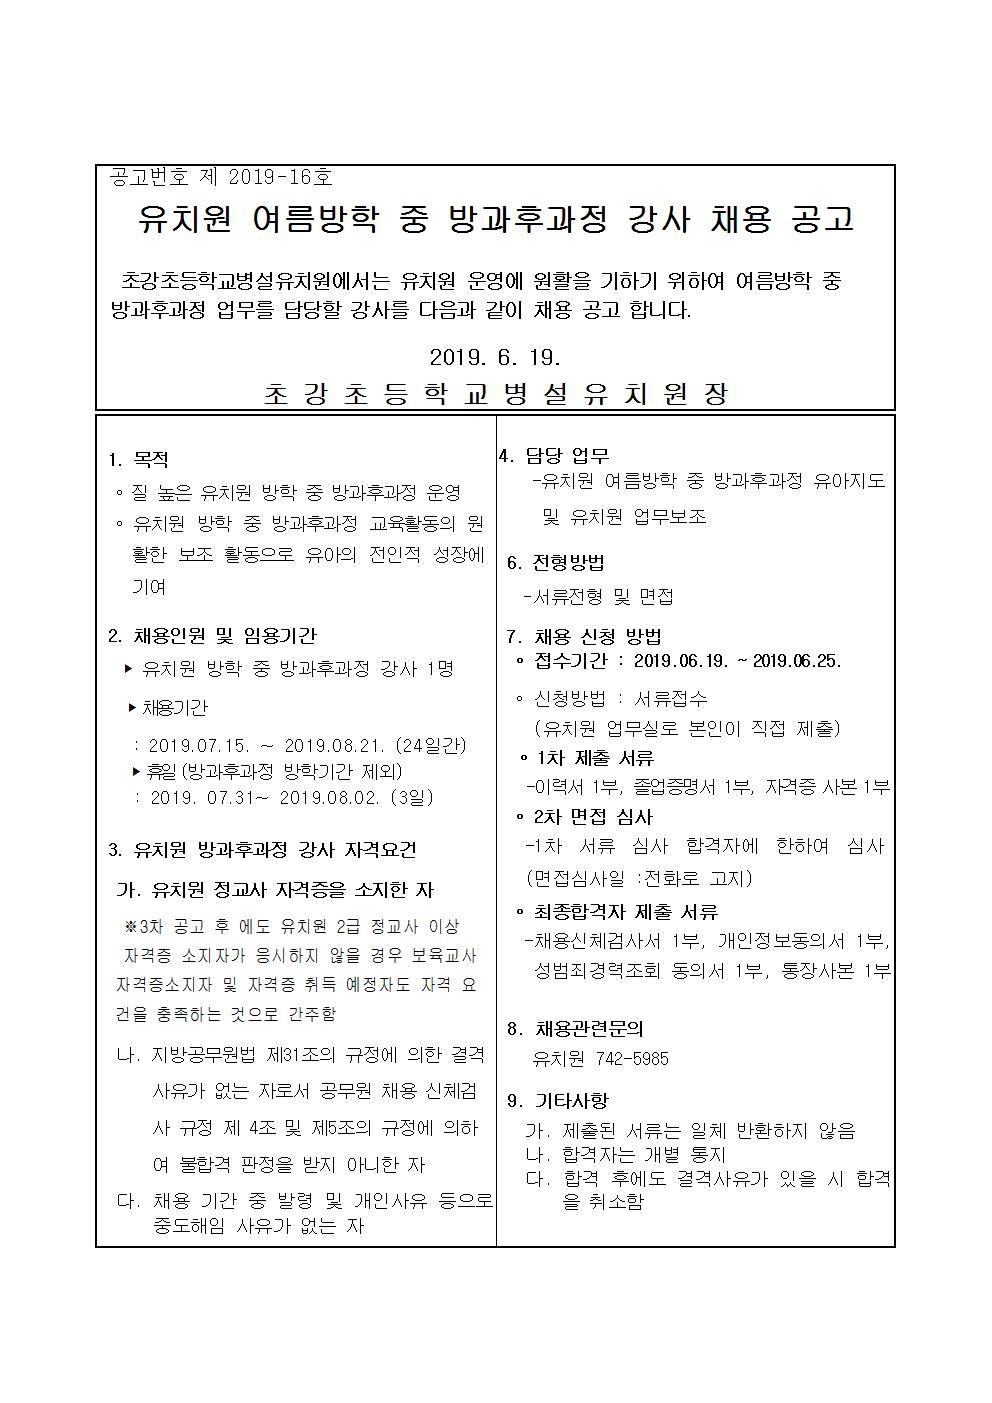 2019. 유치원 여름방학중 방과후과정 강사 채용 공고문 1차001